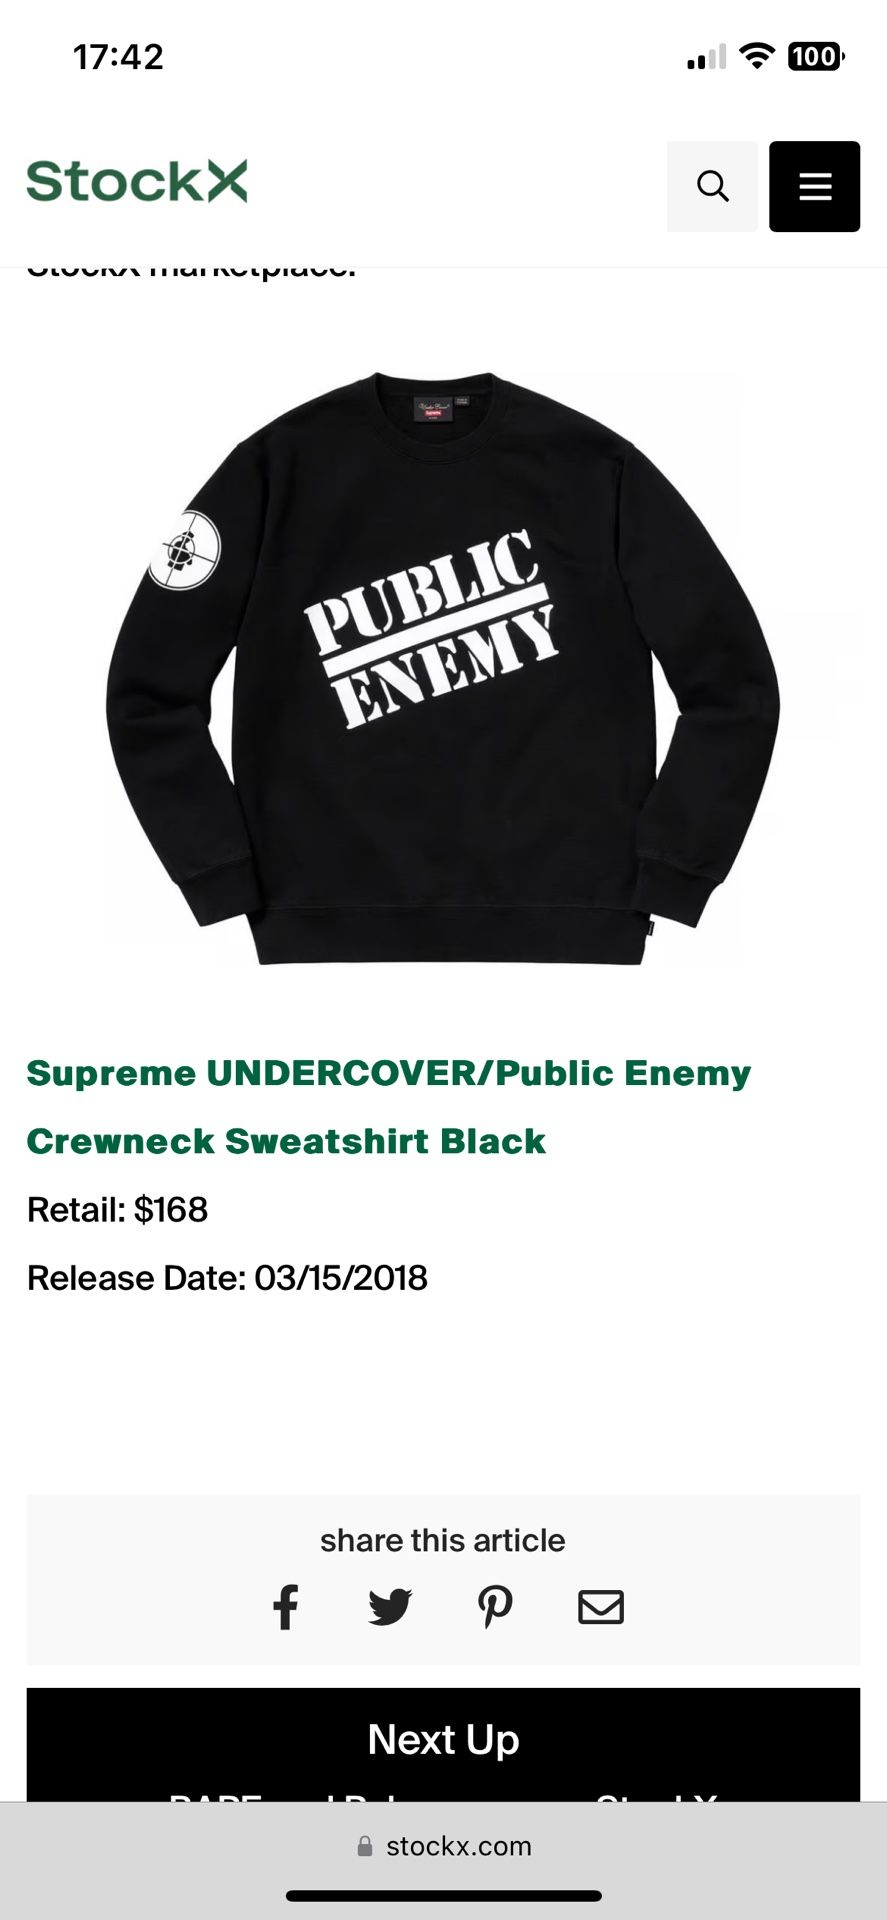 Supreme UNDERCOVER/Public Enemy Crewneck Sweatshirt Black